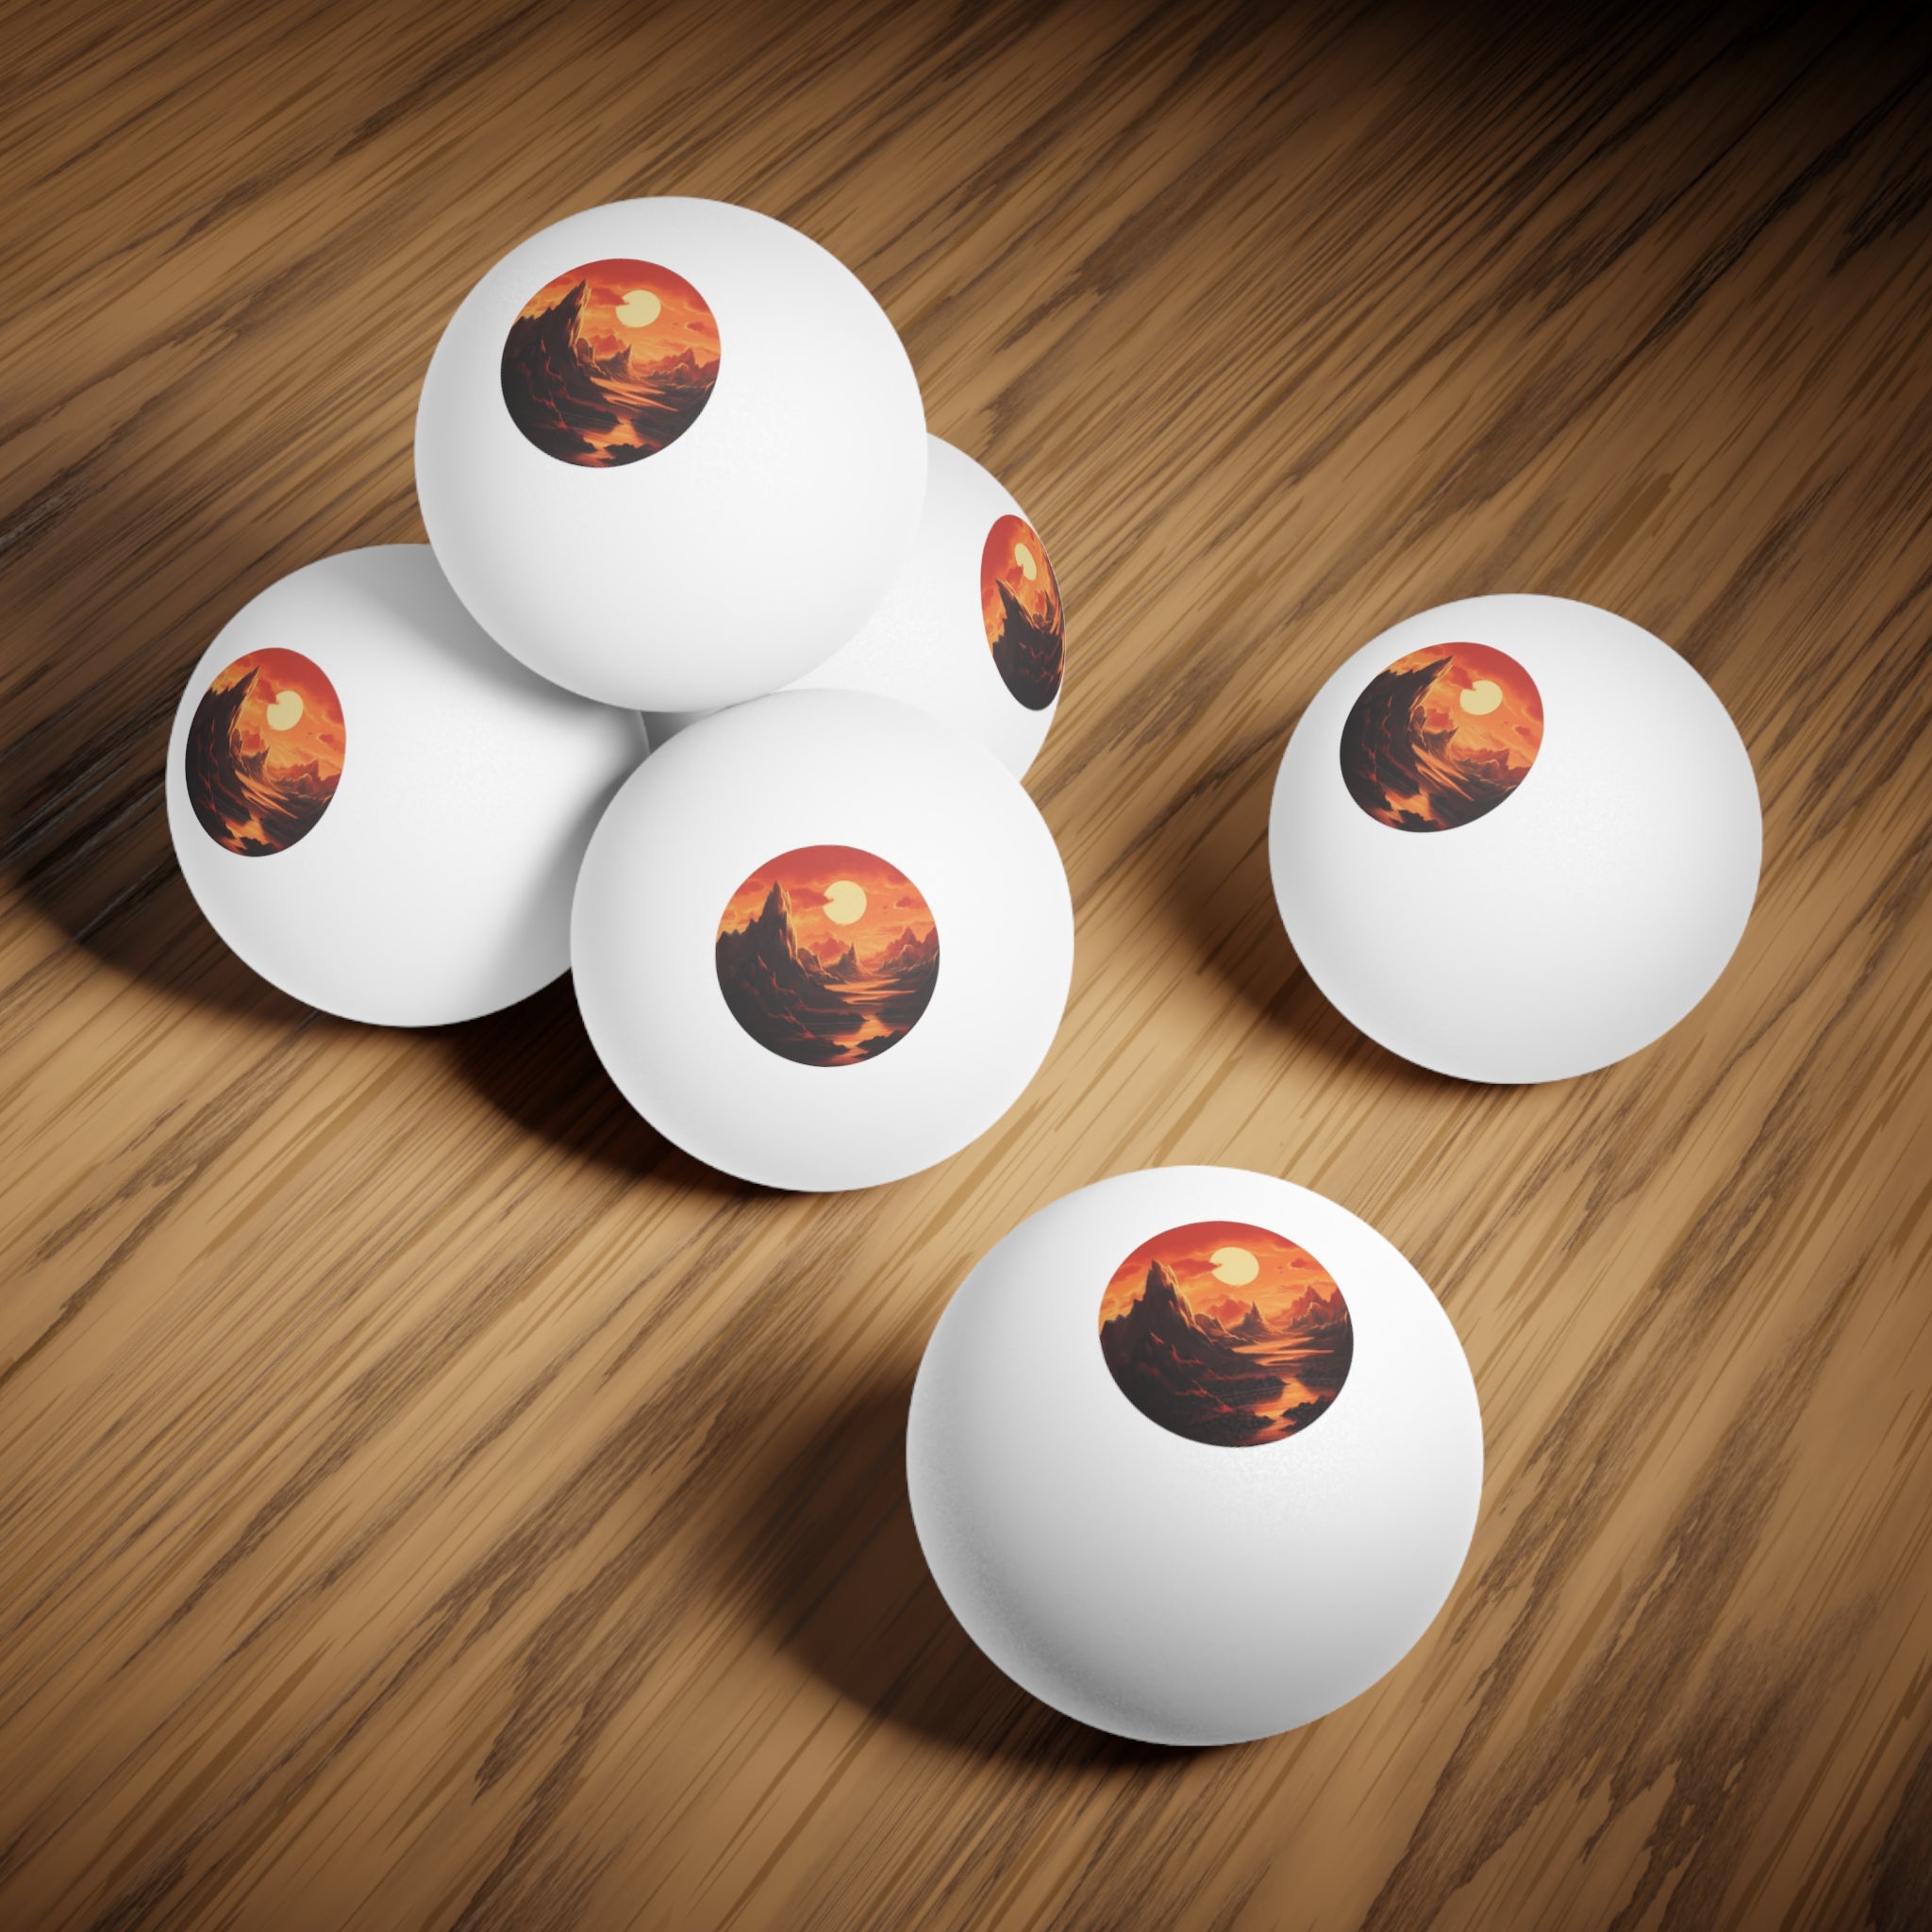 Ping Pong Balls, 6 pcs - Pop Art - Golden Hour Designs 04